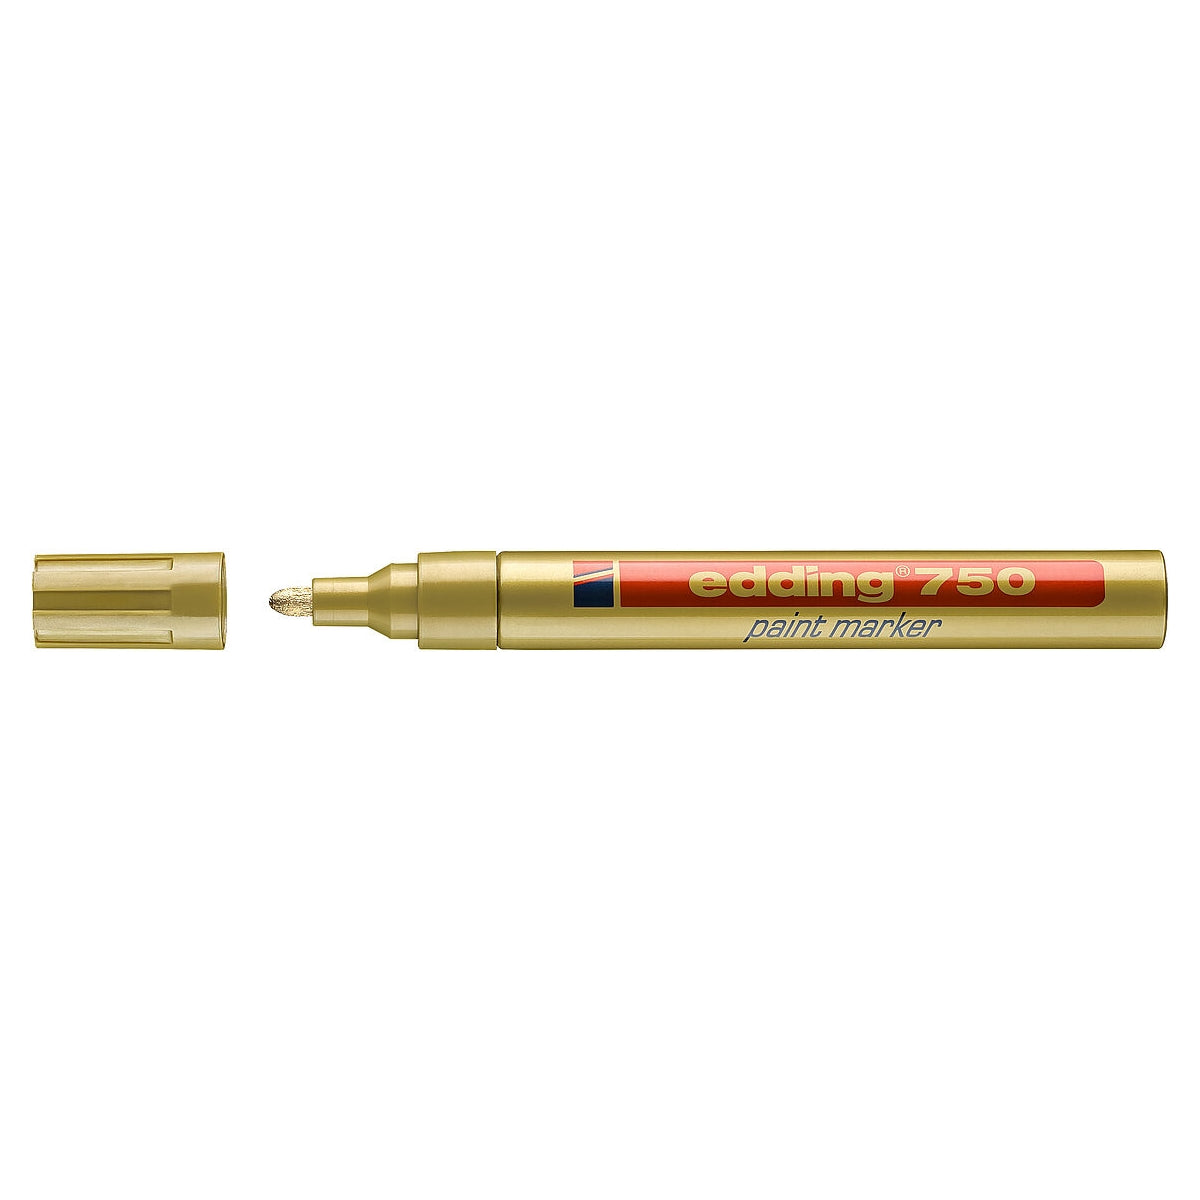 edding 750 Paint Marker, 2-4mm Bullet Tip, Gold